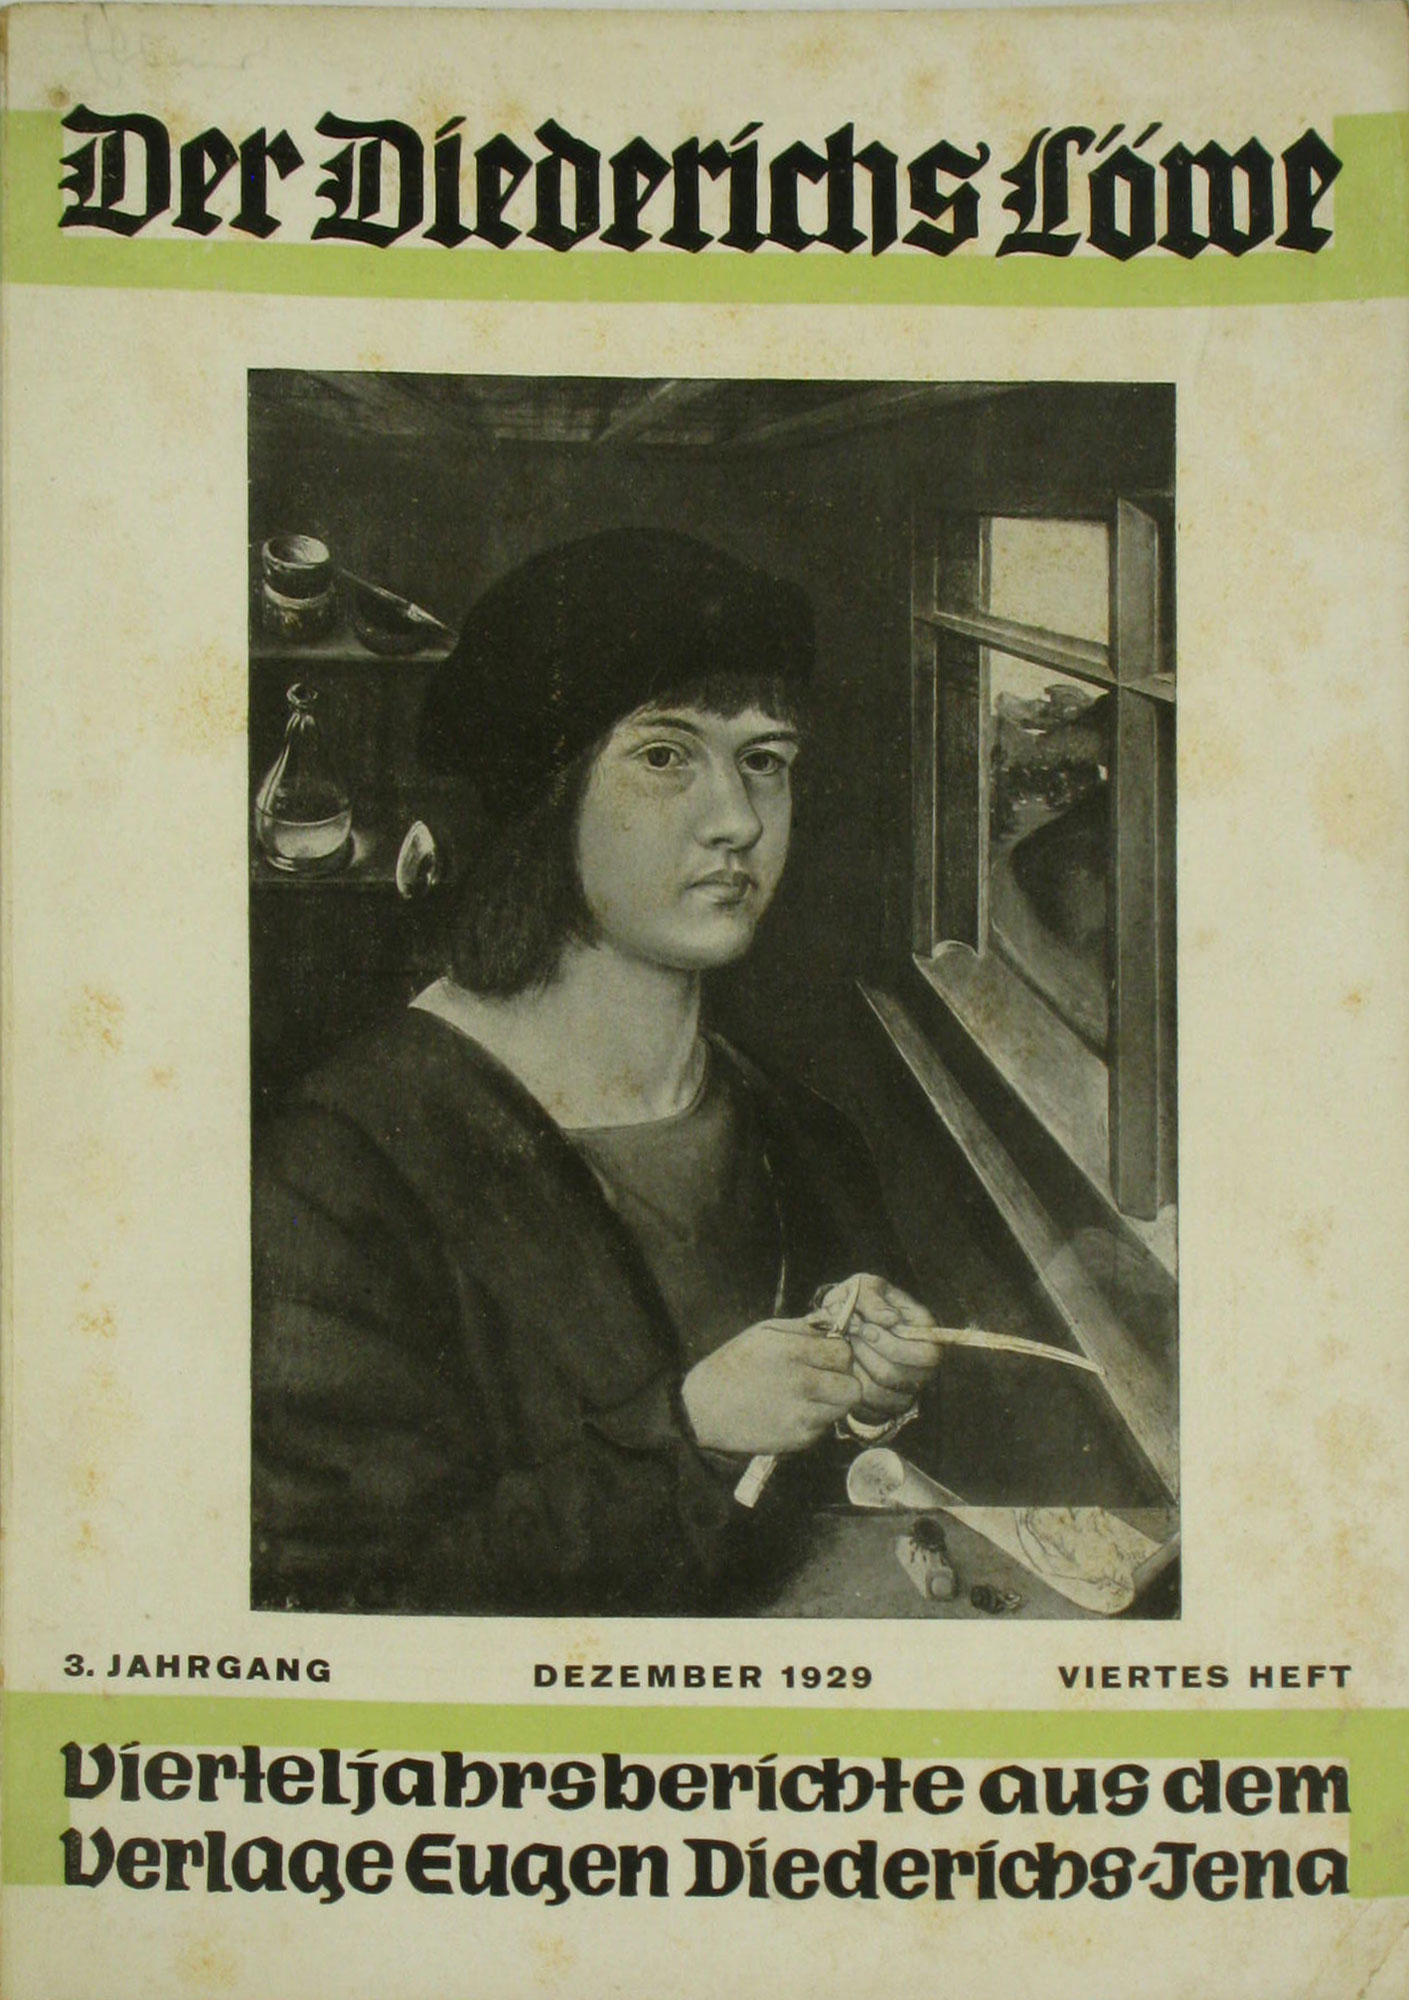 Autorenkollektiv:  Der Diederichs Löwe. Vierteljahresberichte aus dem Verlag Eugen Diederichs, Jena (3. Jahrgang, Dezember 1929, Viertes Heft). 